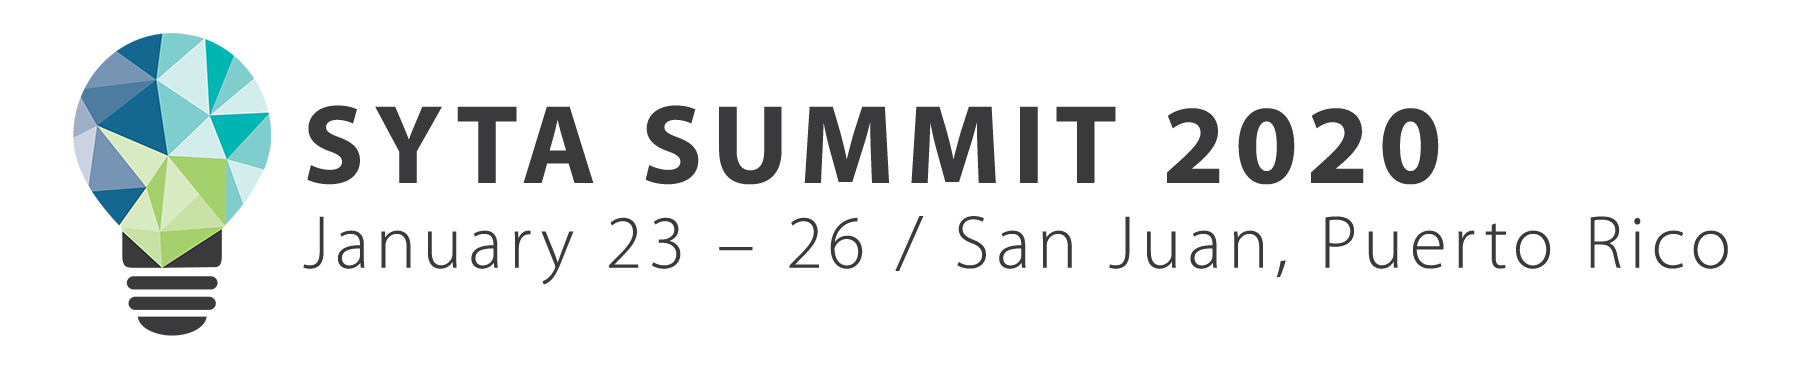 SYTA Summit 2020